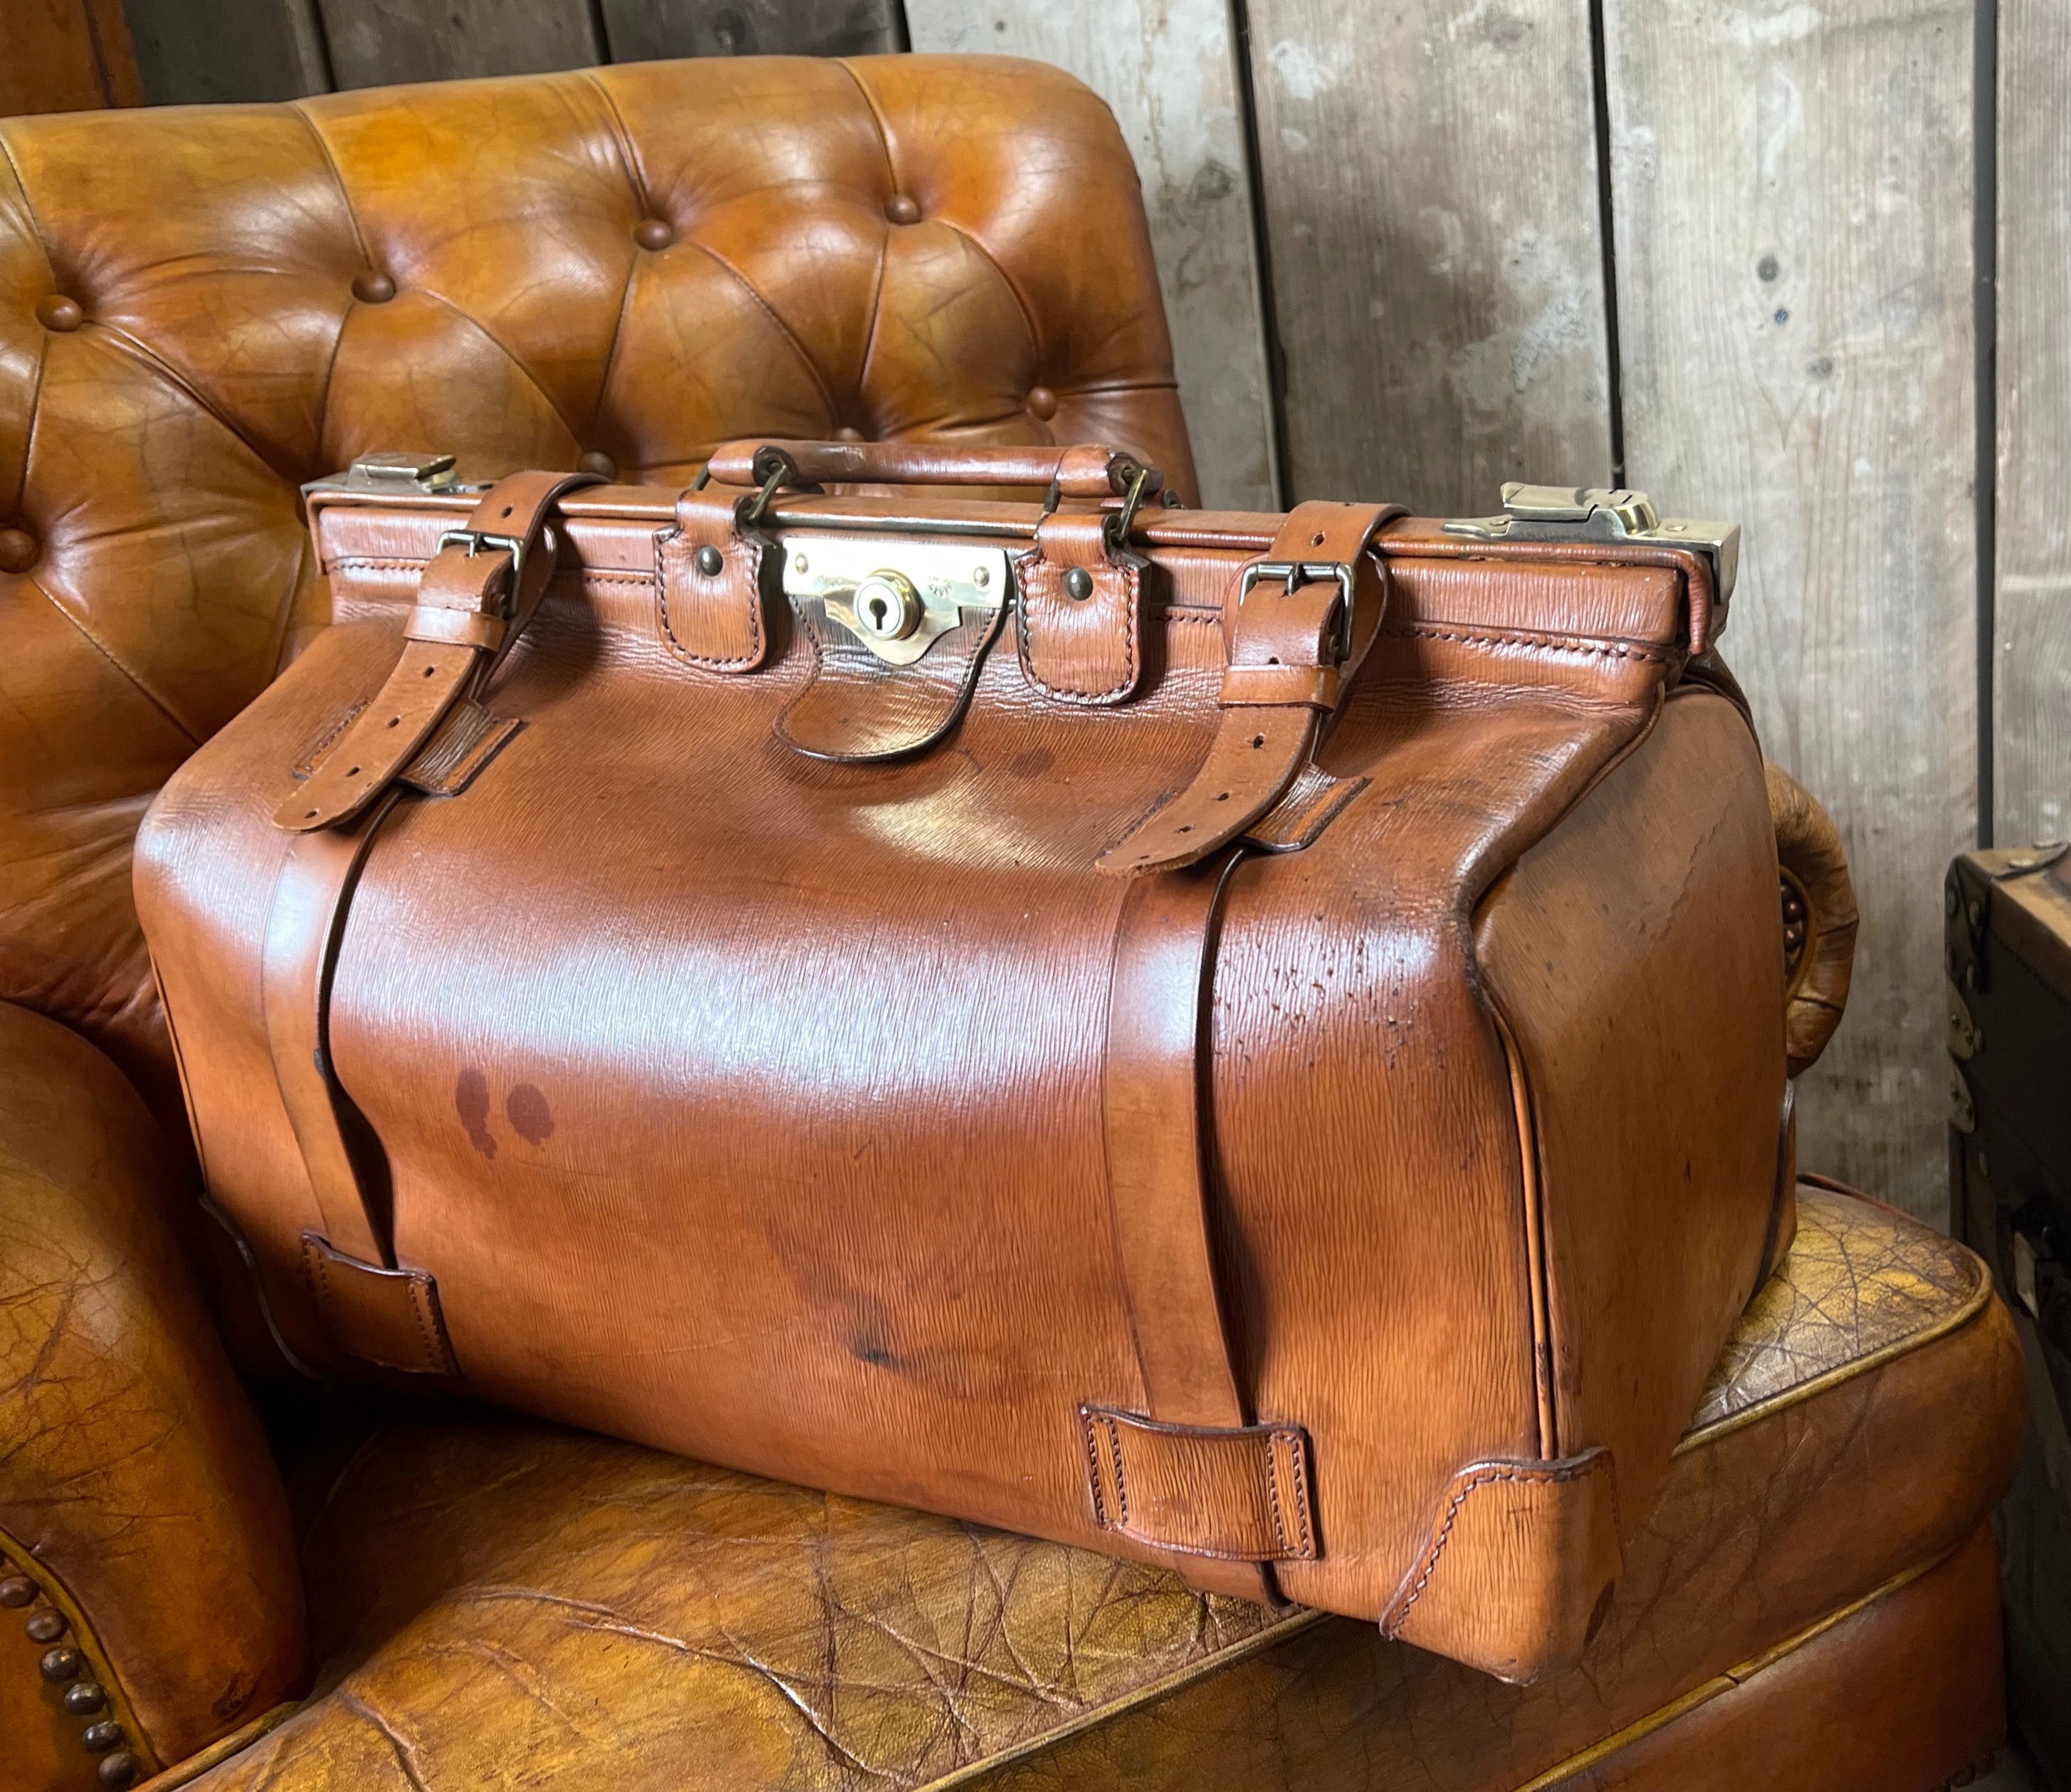 Luxury Bridle Leather Gladstone Bag